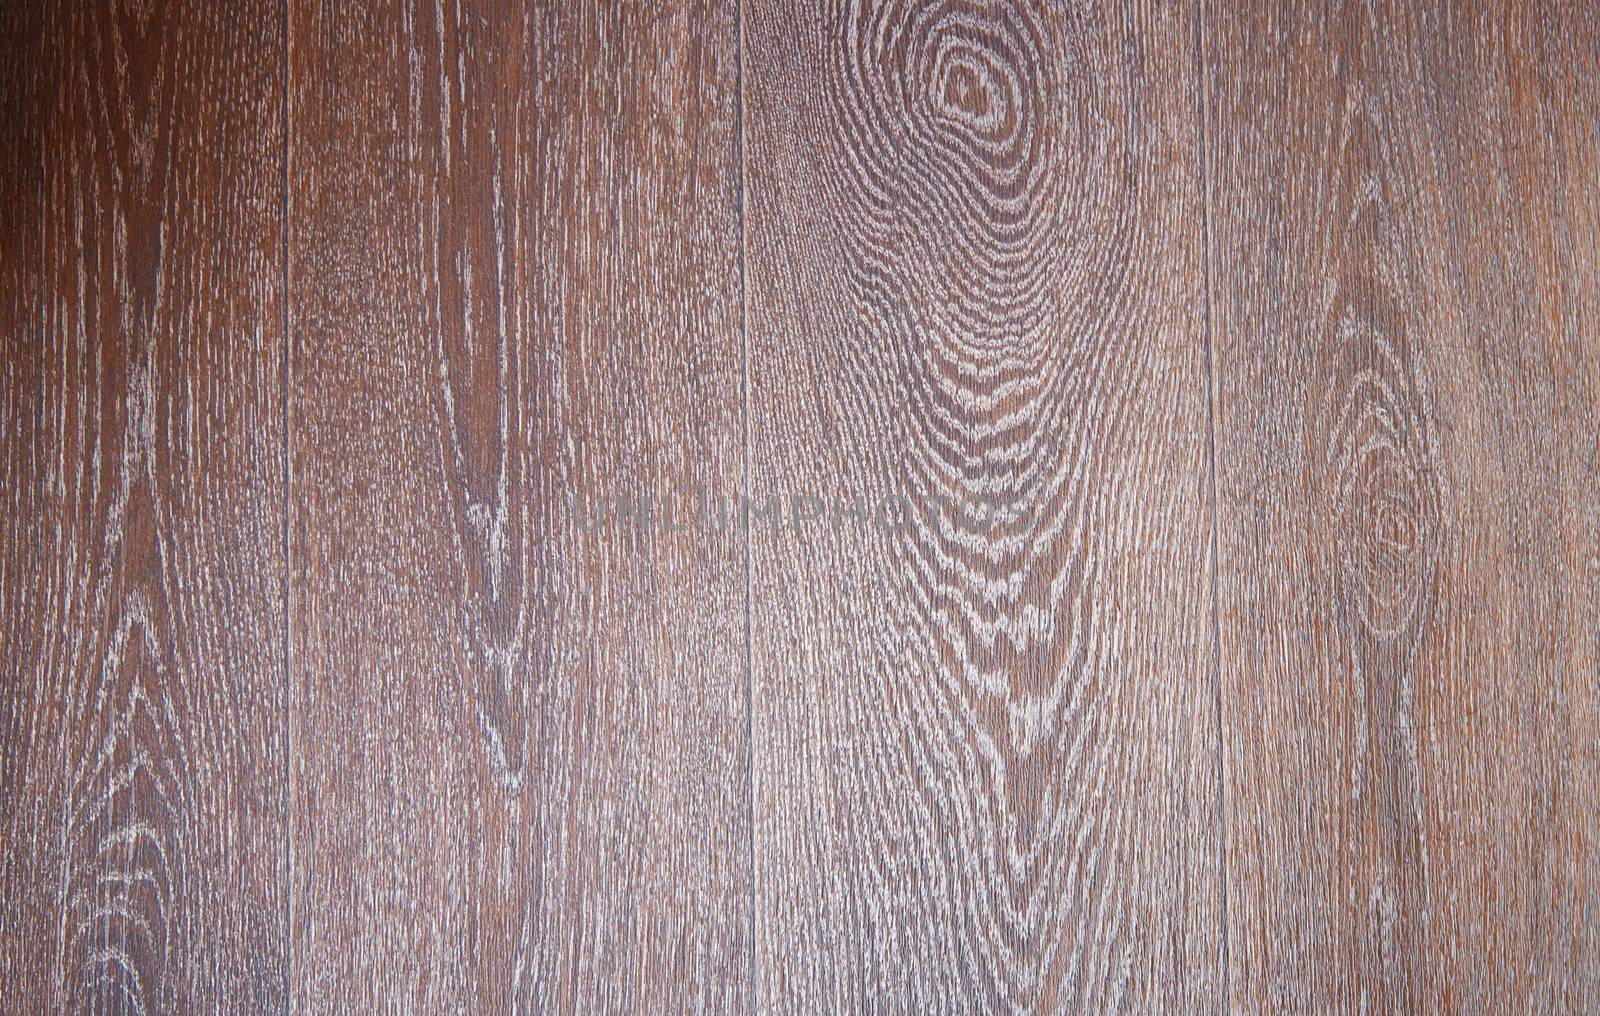 Texture of hardwood material. Horizontal photo